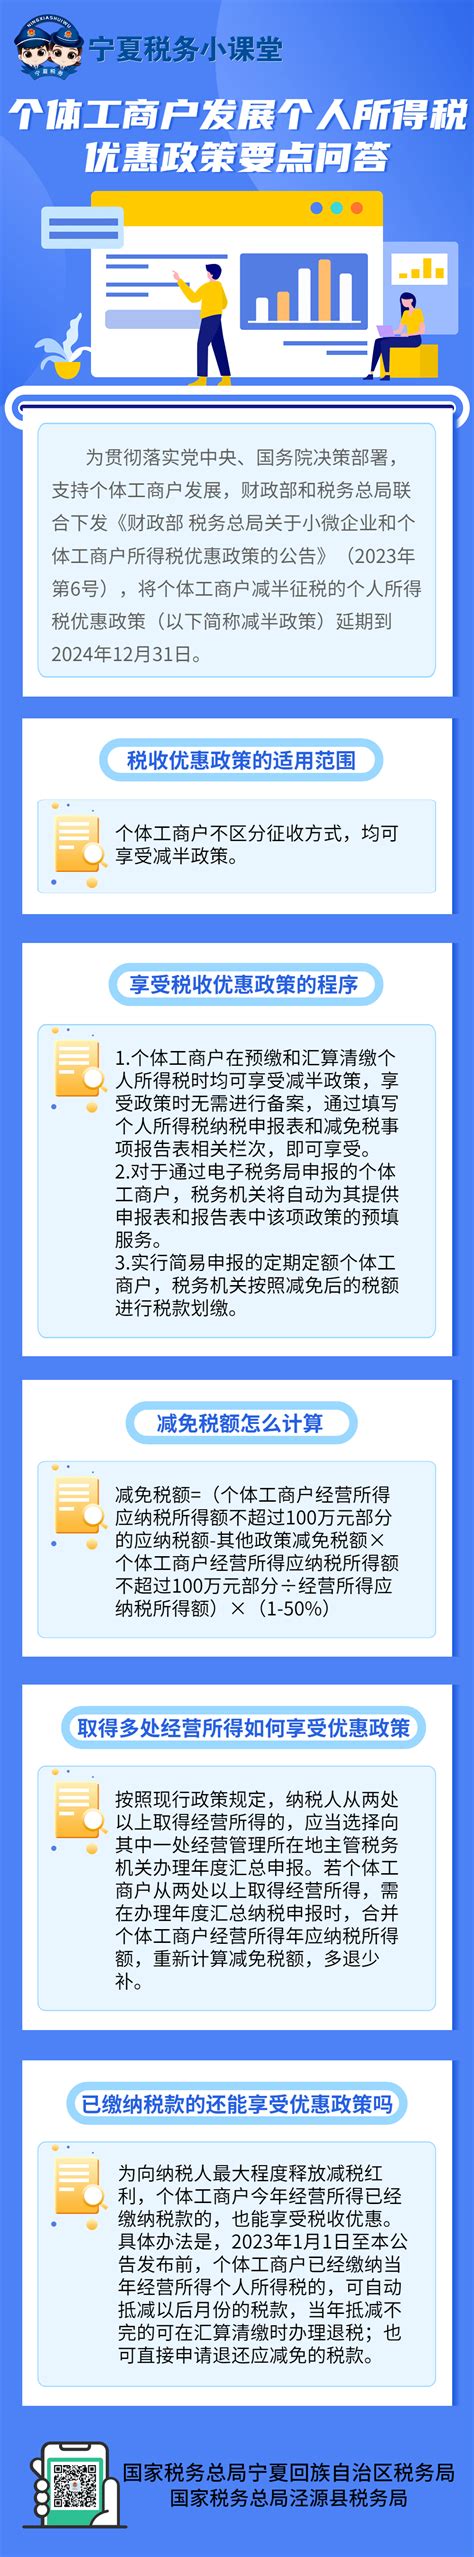 国家税务总局宁夏回族自治区电子税务局快速操作指引